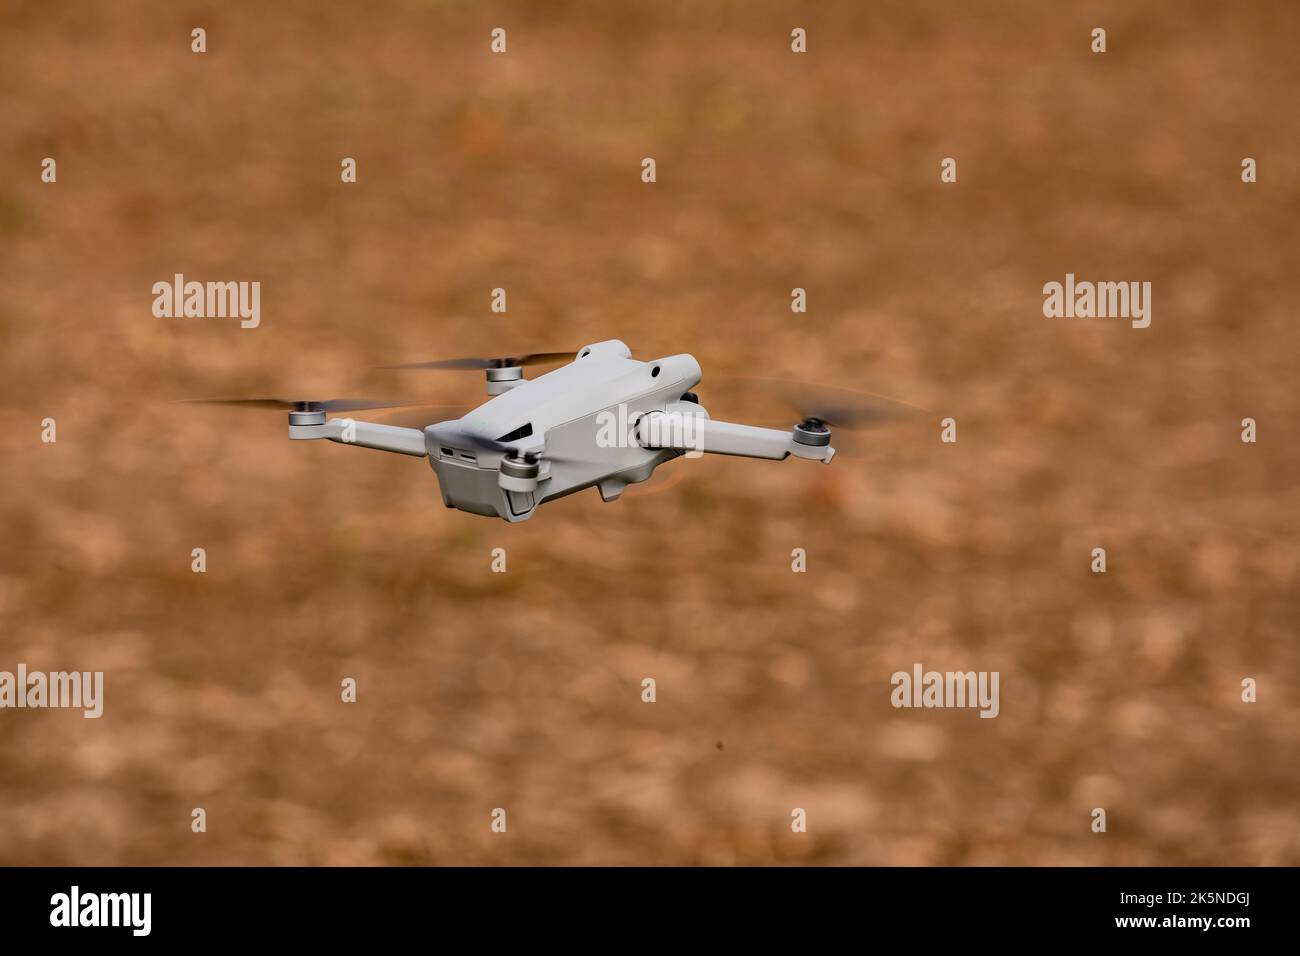 Un drone de caméra ou un multicopter volant exempté au-dessus d'un champ Banque D'Images